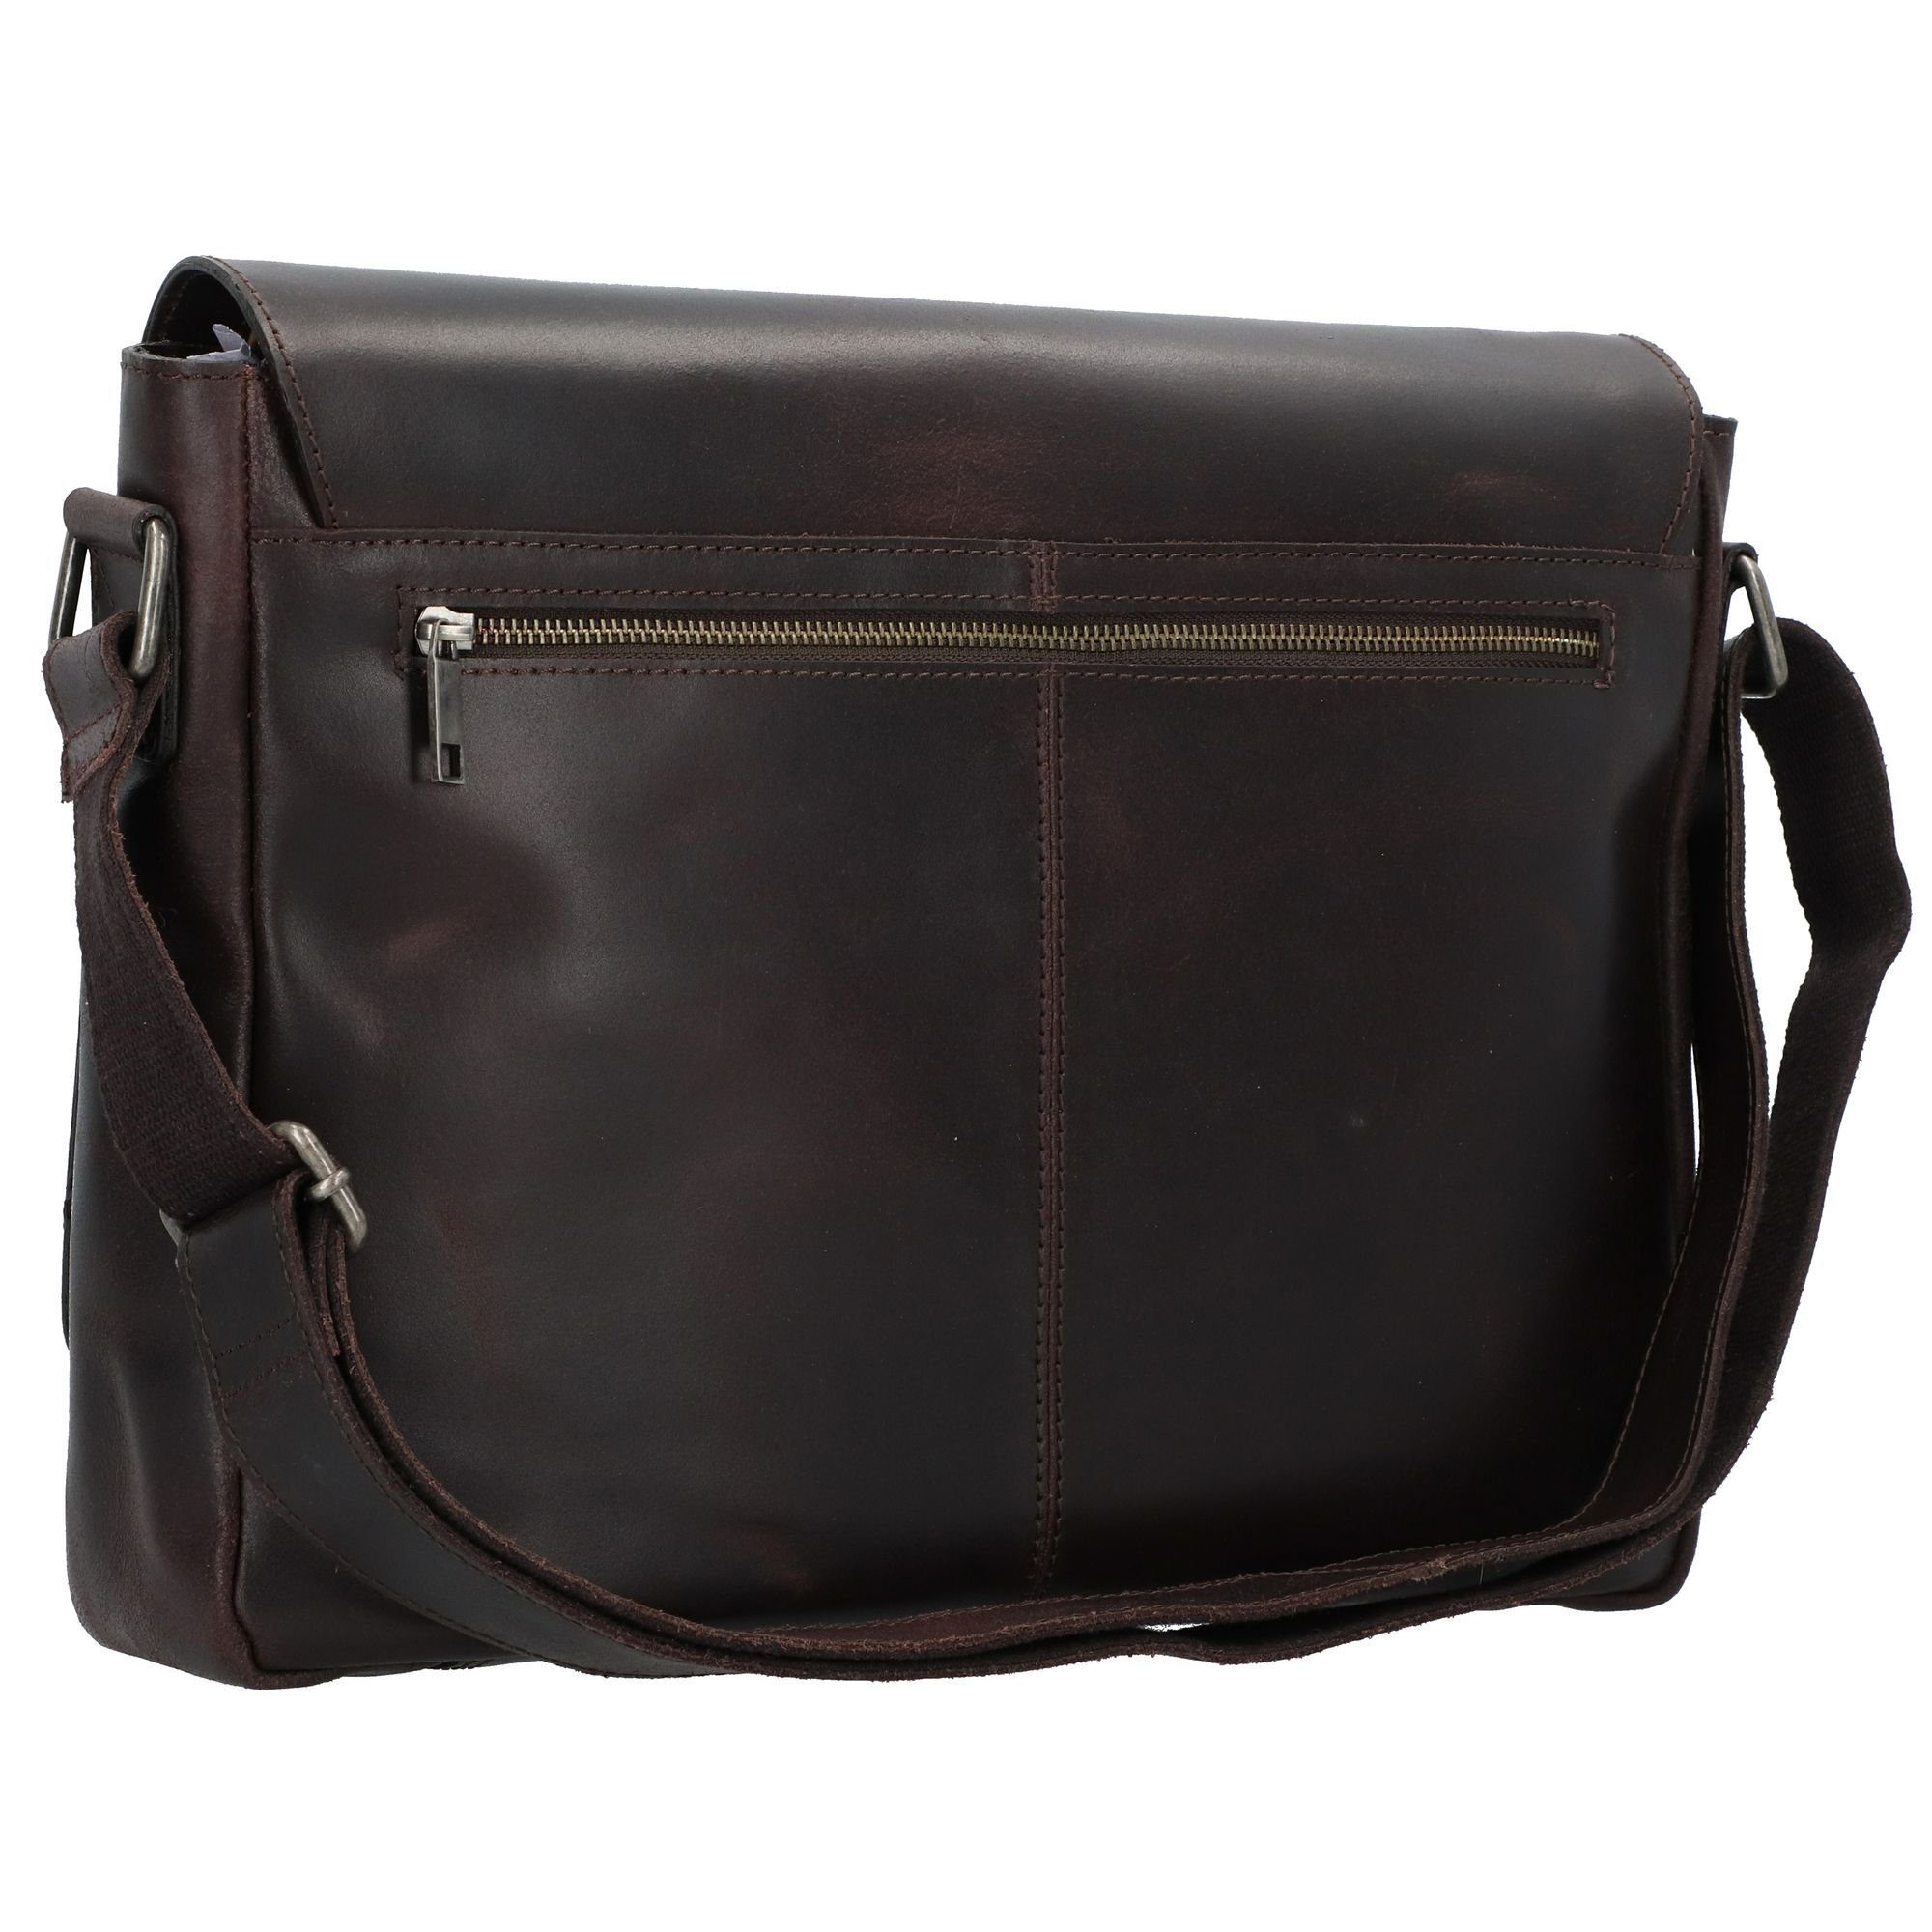 Burkley Leder Bag Burkely brown Vintage, Messenger